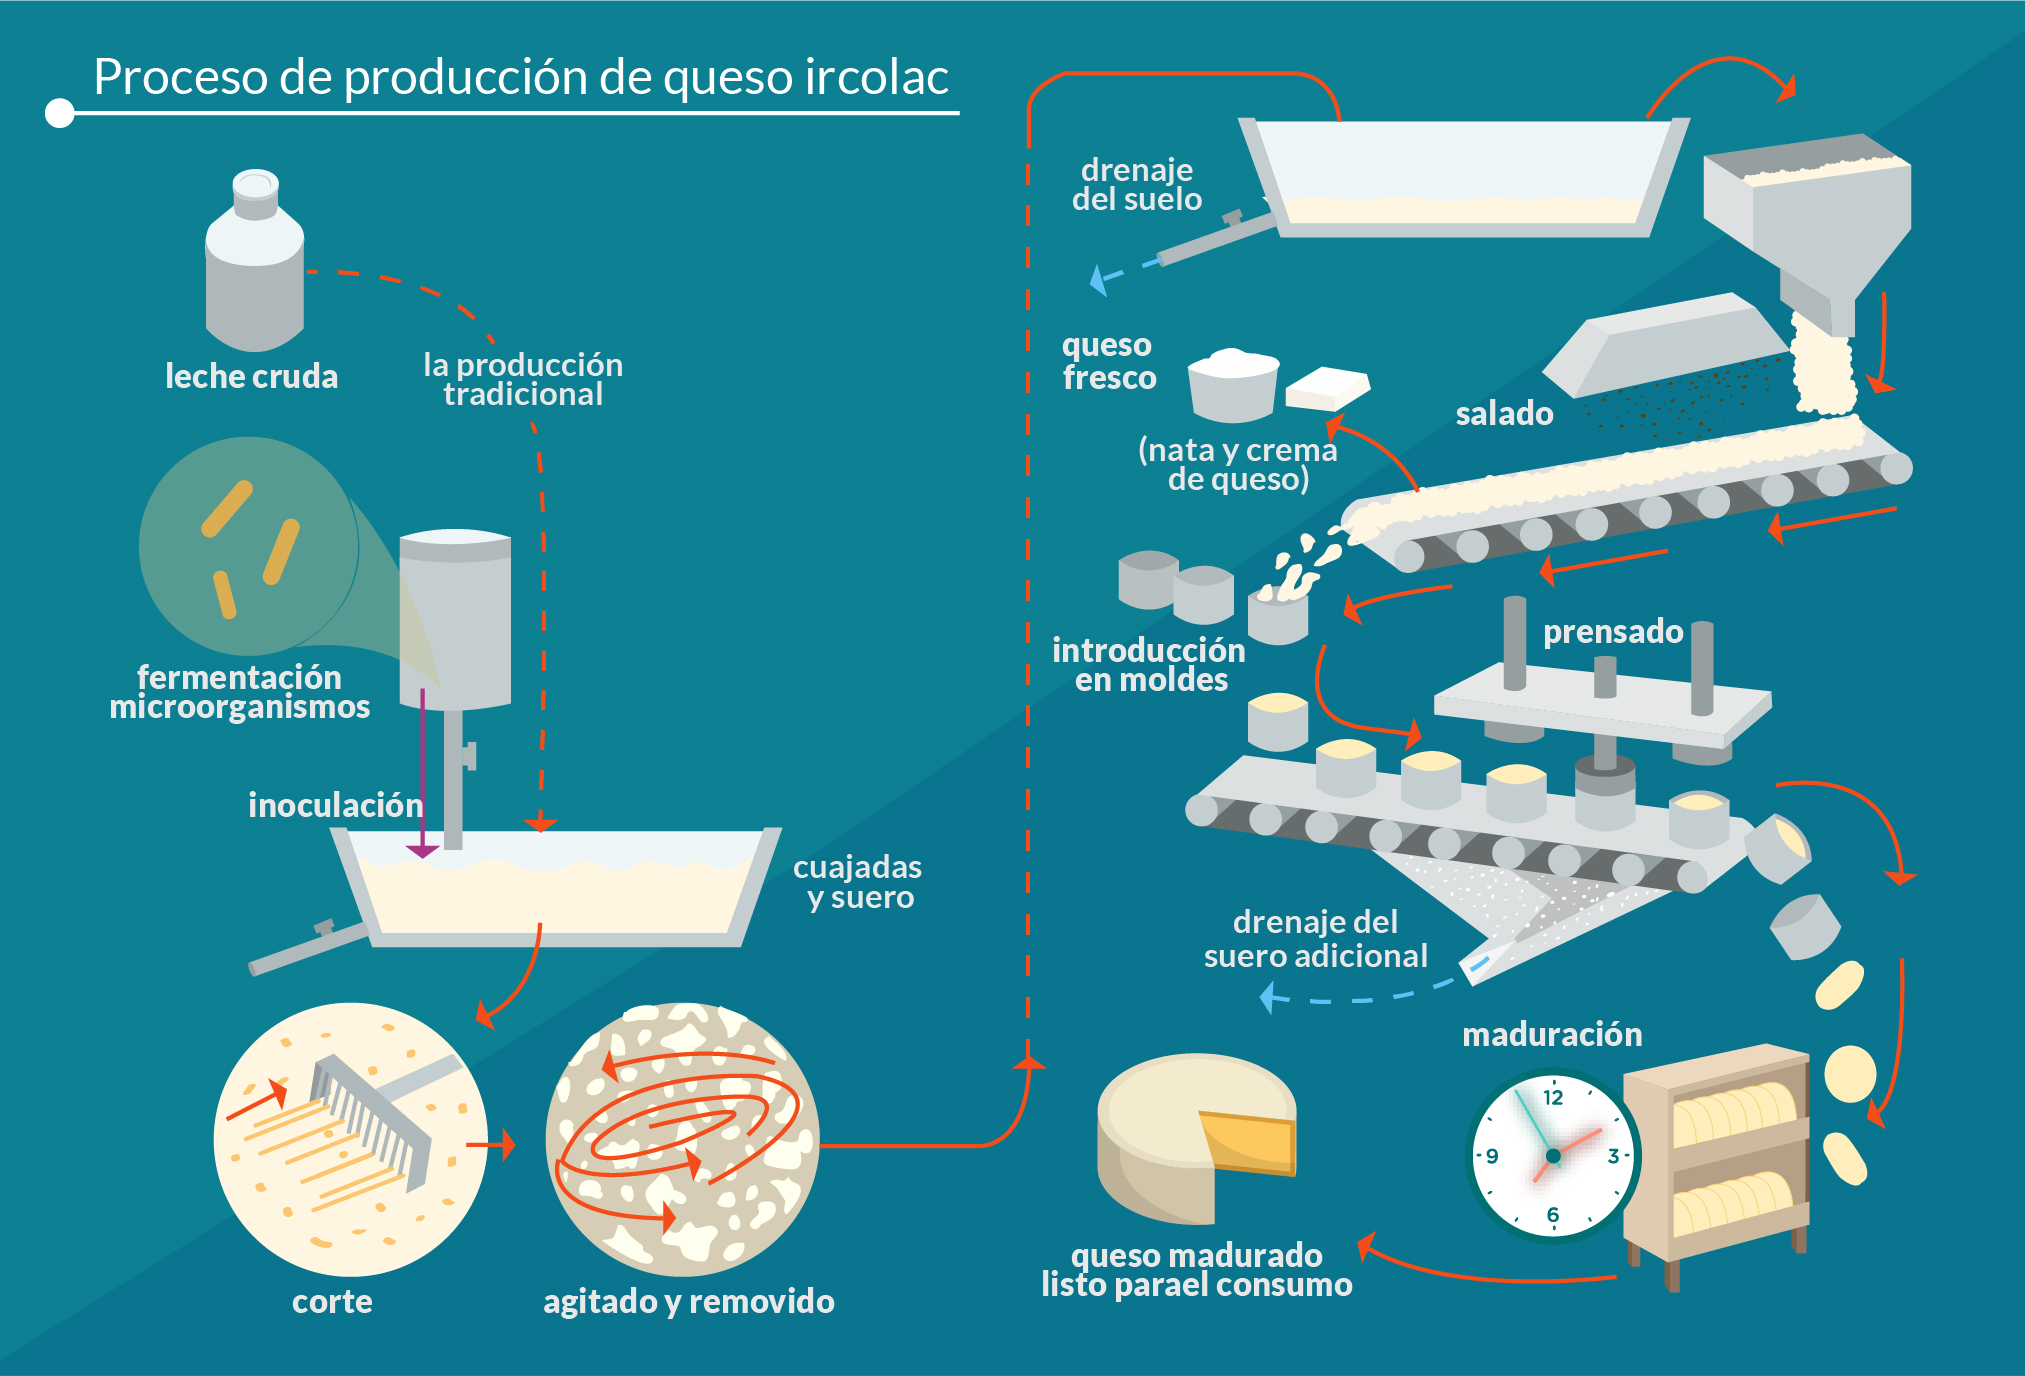 imagen que ilustra el proceso de producción del queso ircolac.